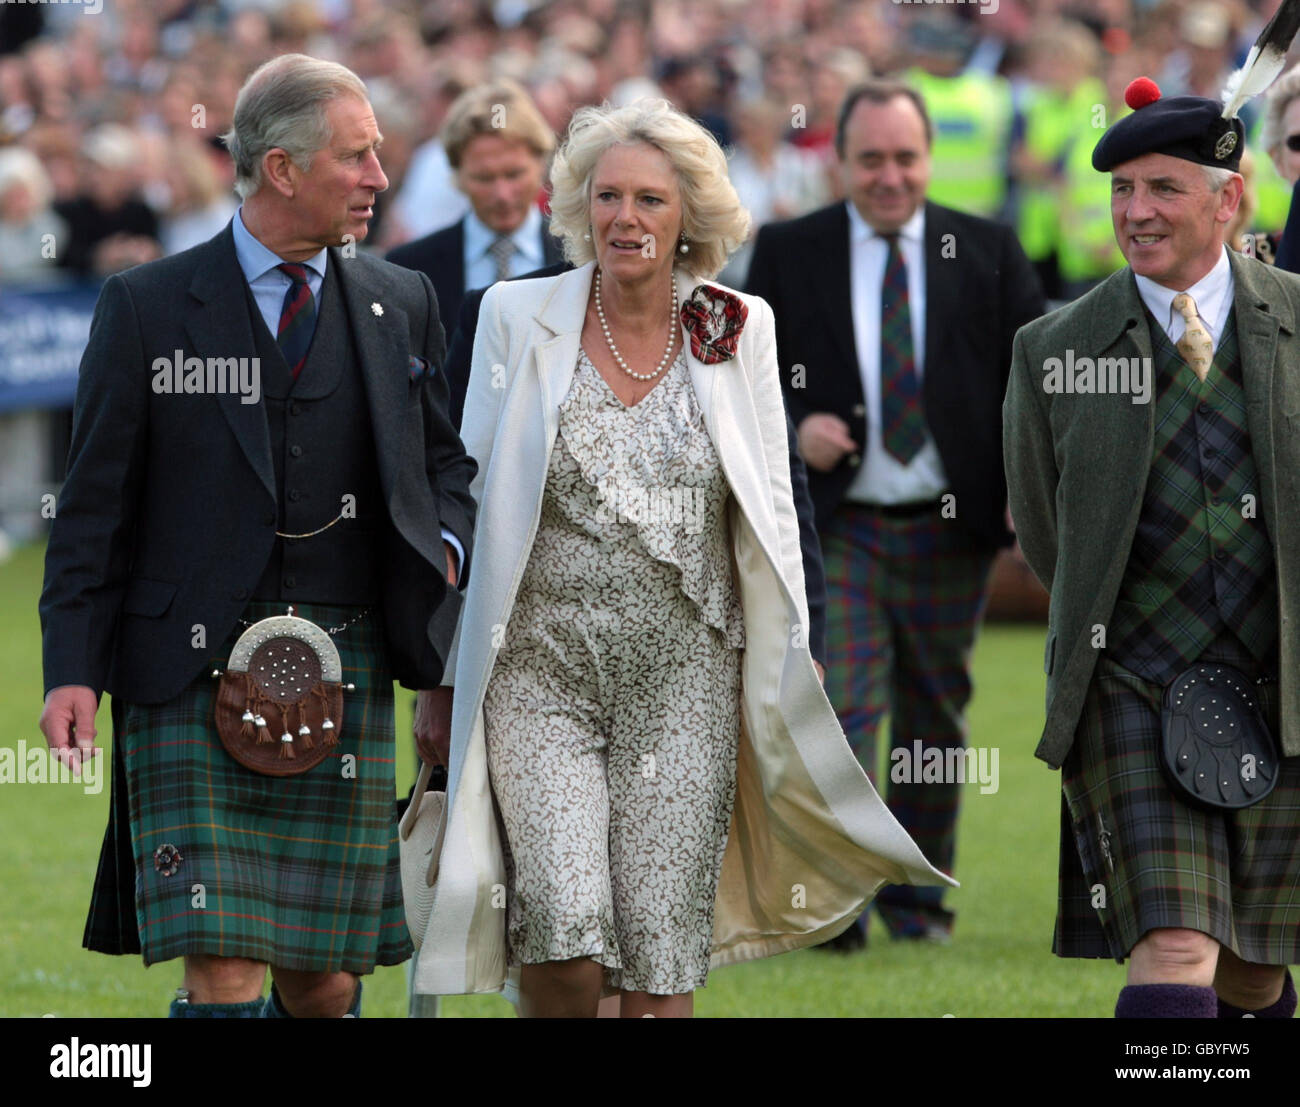 Il Duca di Rothesay, noto anche come Principe di Galles, Patrono del raduno 2009 e la duchessa di Rothesay, anche conosciuta come la duchessa di Cornovaglia, prima dell'apertura ufficiale del raduno 2009, a Holyrood Park, Edimburgo. Foto Stock